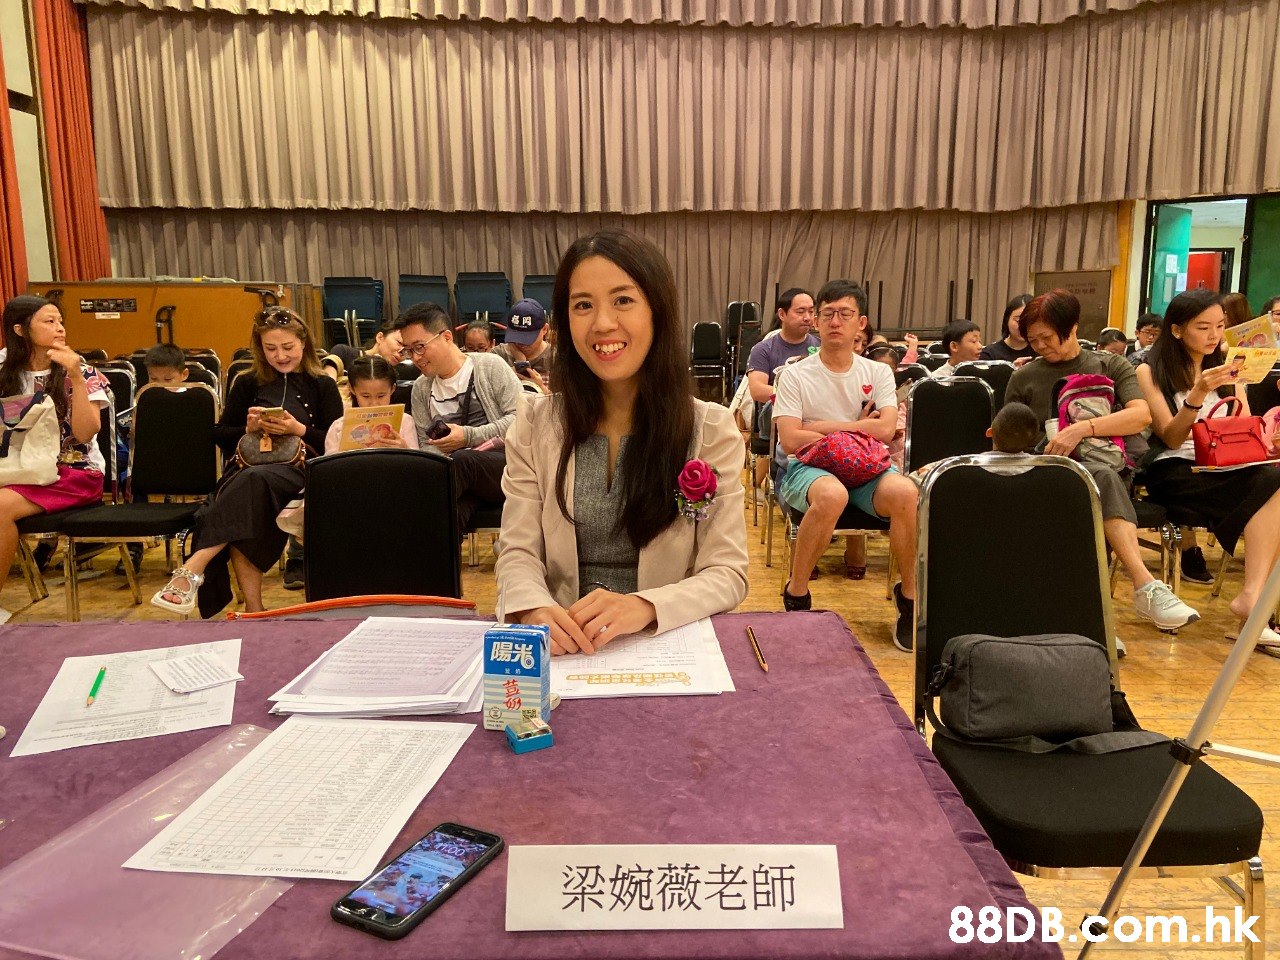 梁婉薇老師 88DB com.hk  Event,Community,Lunch,